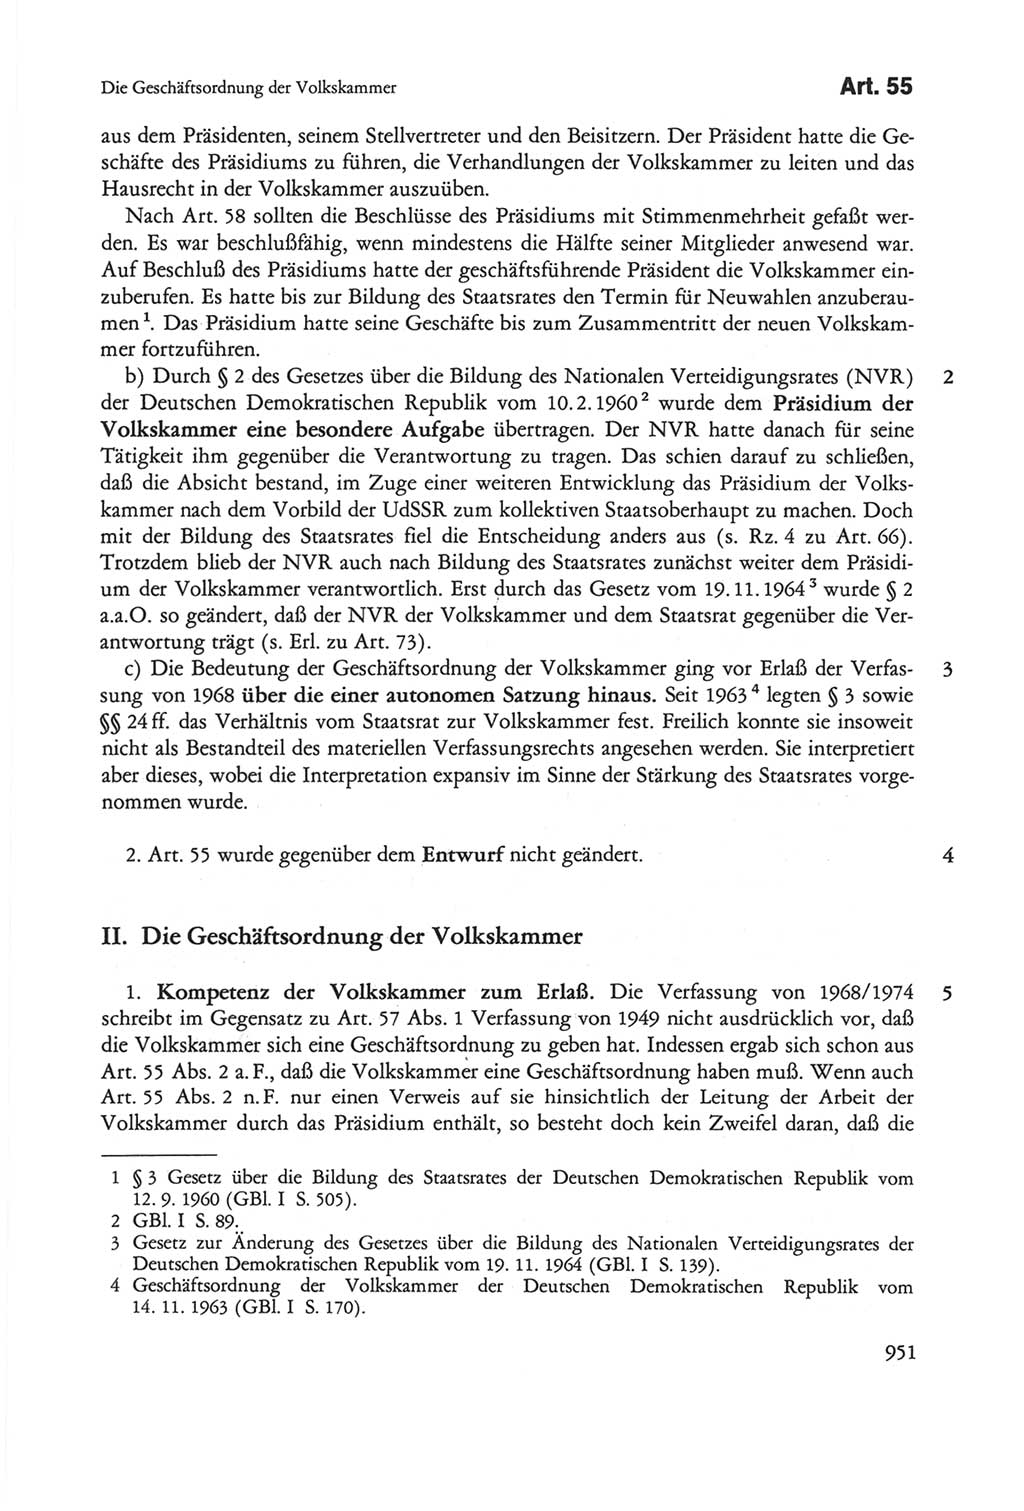 Die sozialistische Verfassung der Deutschen Demokratischen Republik (DDR), Kommentar mit einem Nachtrag 1997, Seite 951 (Soz. Verf. DDR Komm. Nachtr. 1997, S. 951)